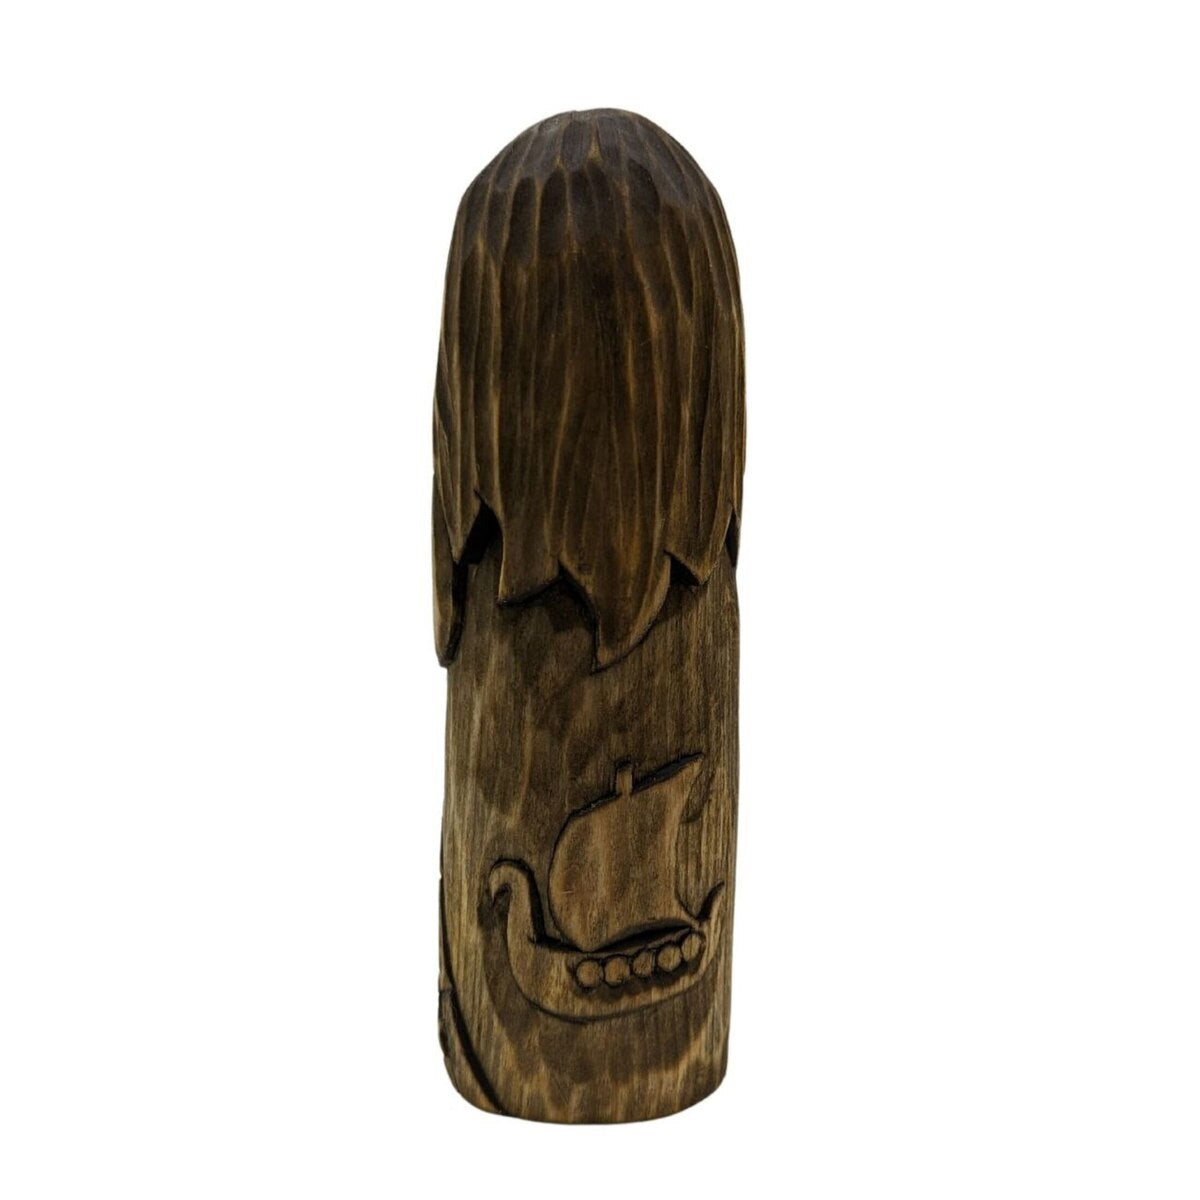 Njord God wooden figurine   